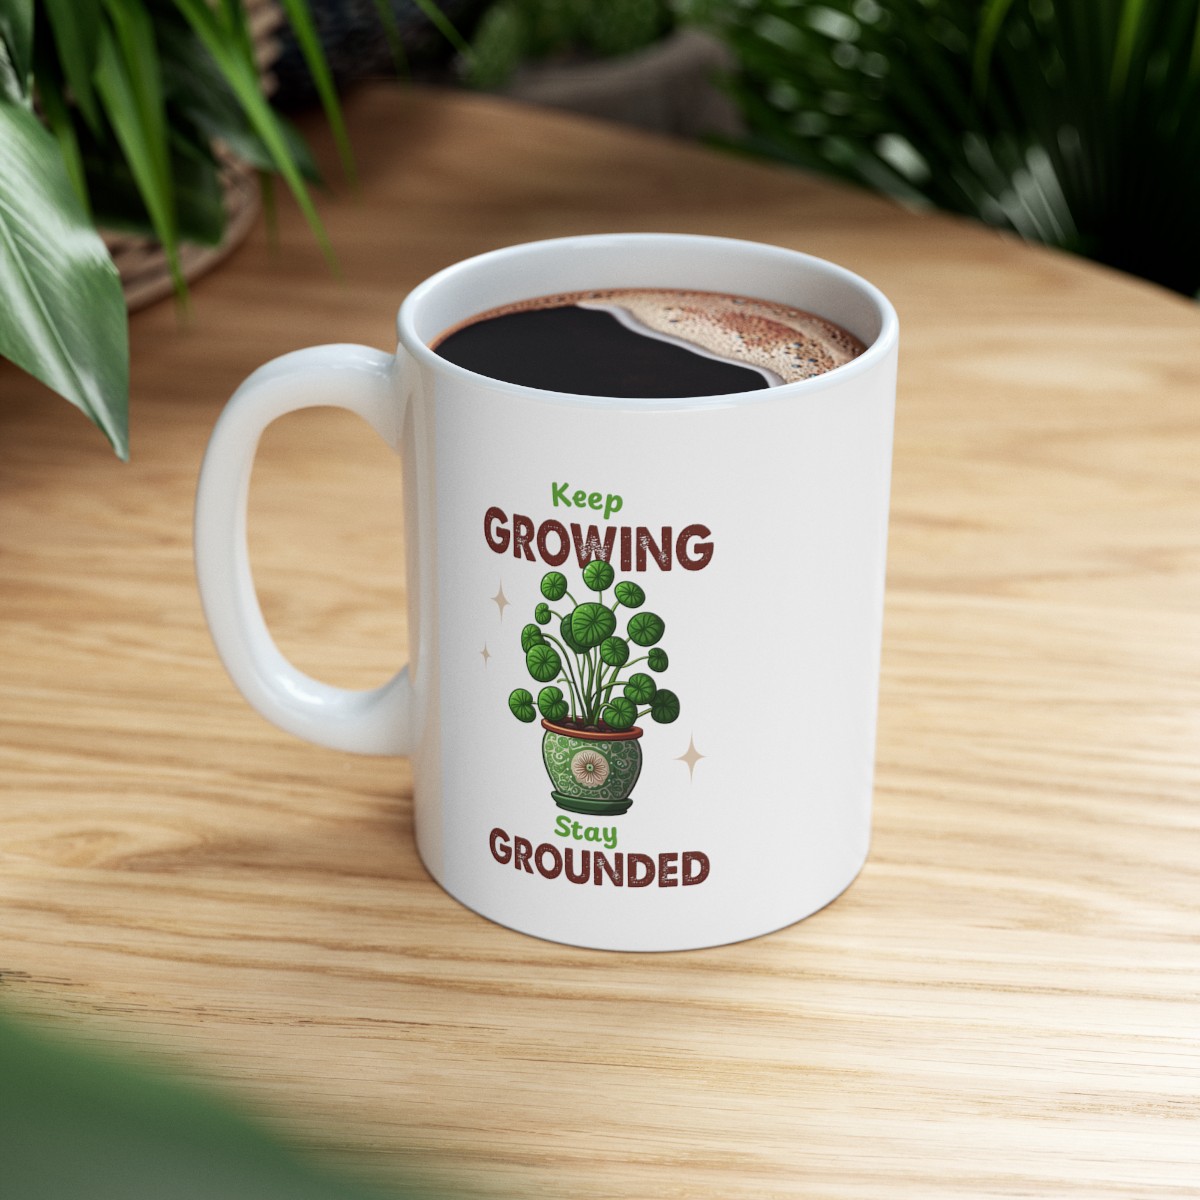 Ceramic Mug - 11oz “Keep Growing, Stay Grounded” product main image